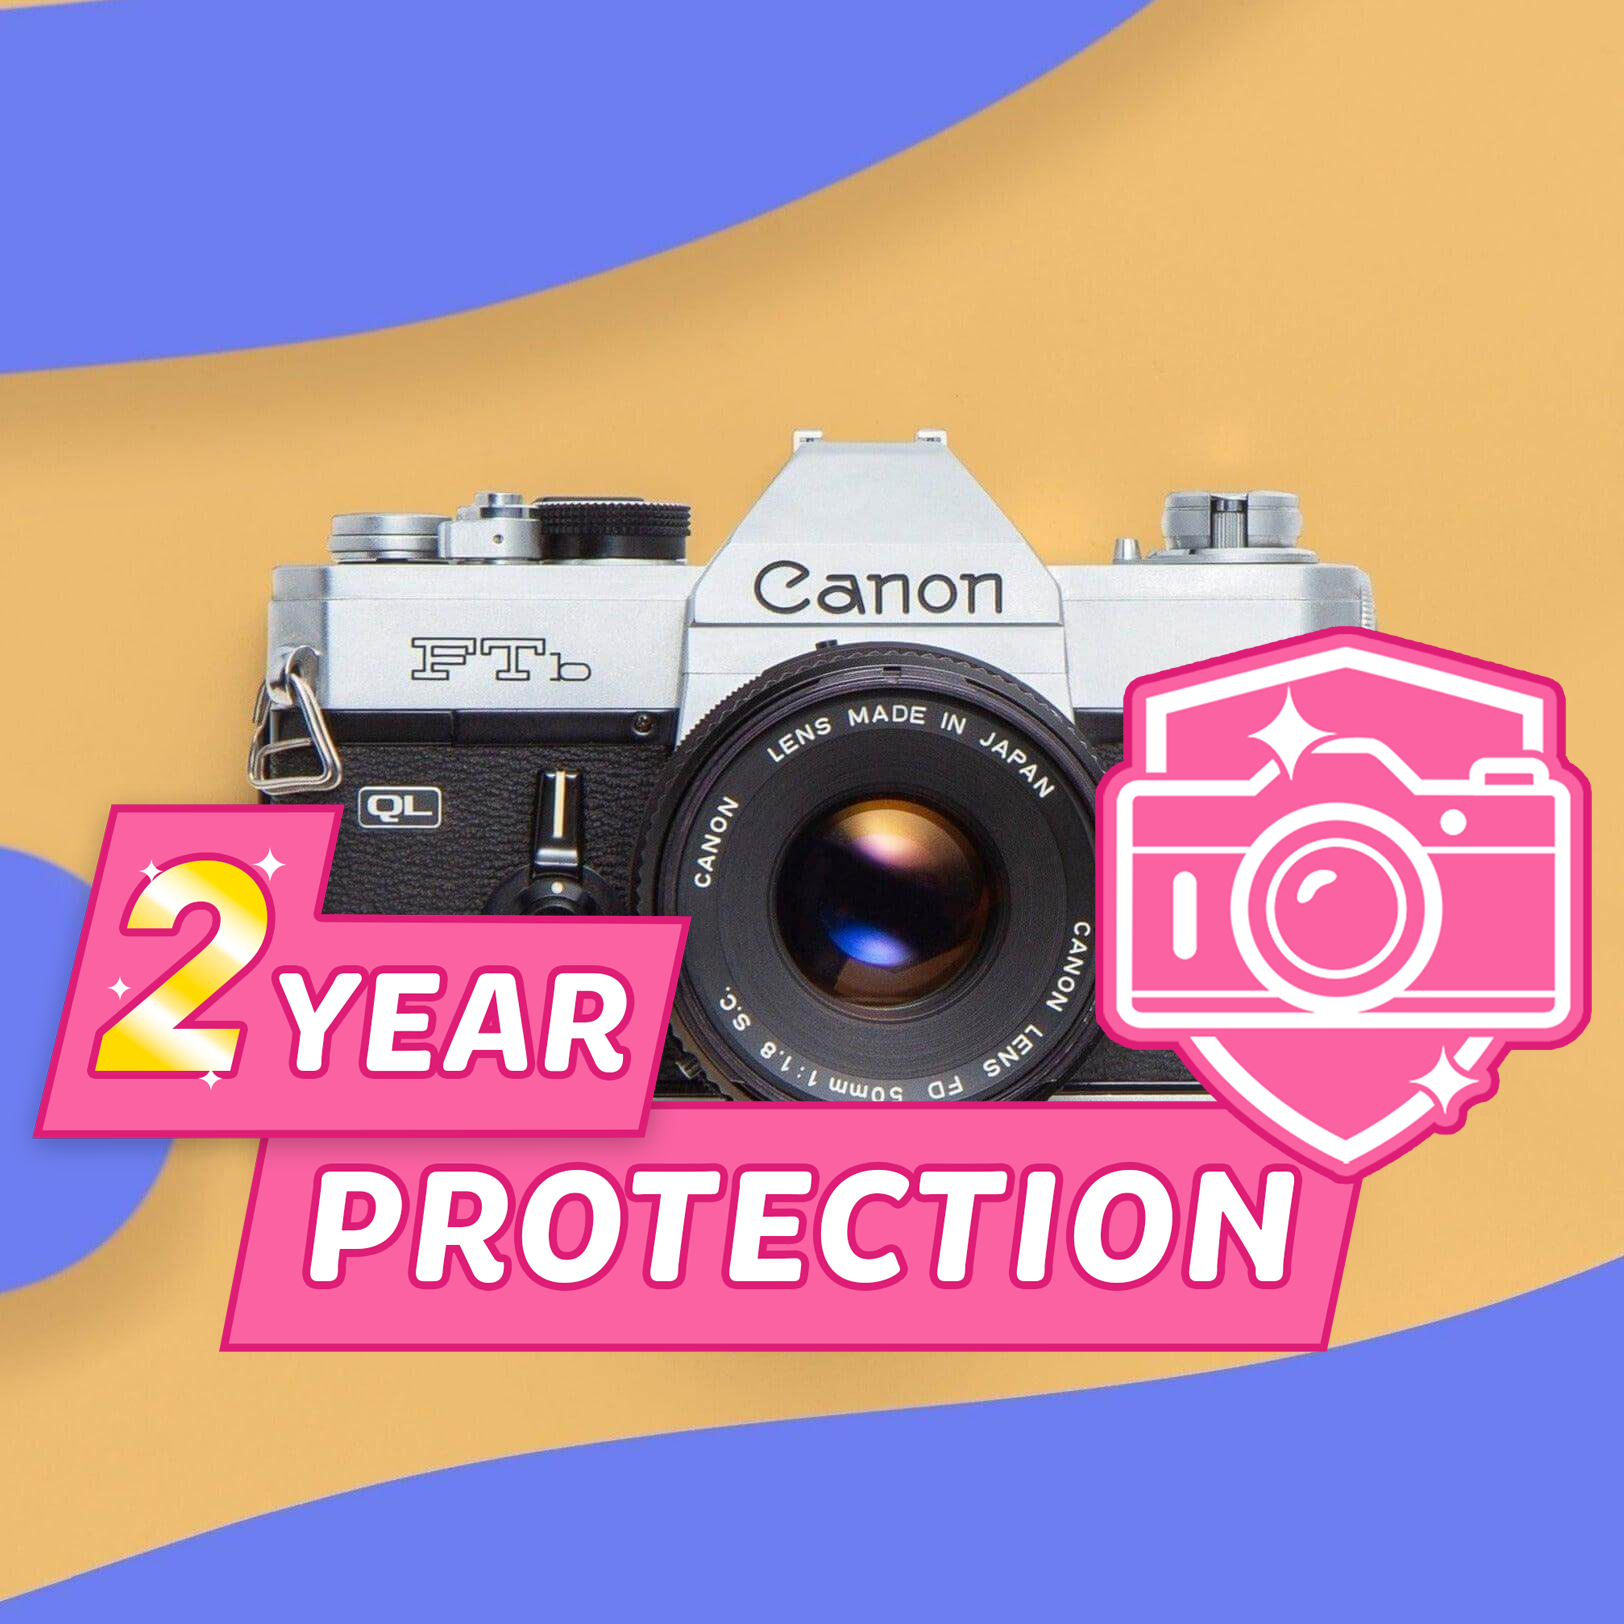 Camera Protection Plan for Canon FTb